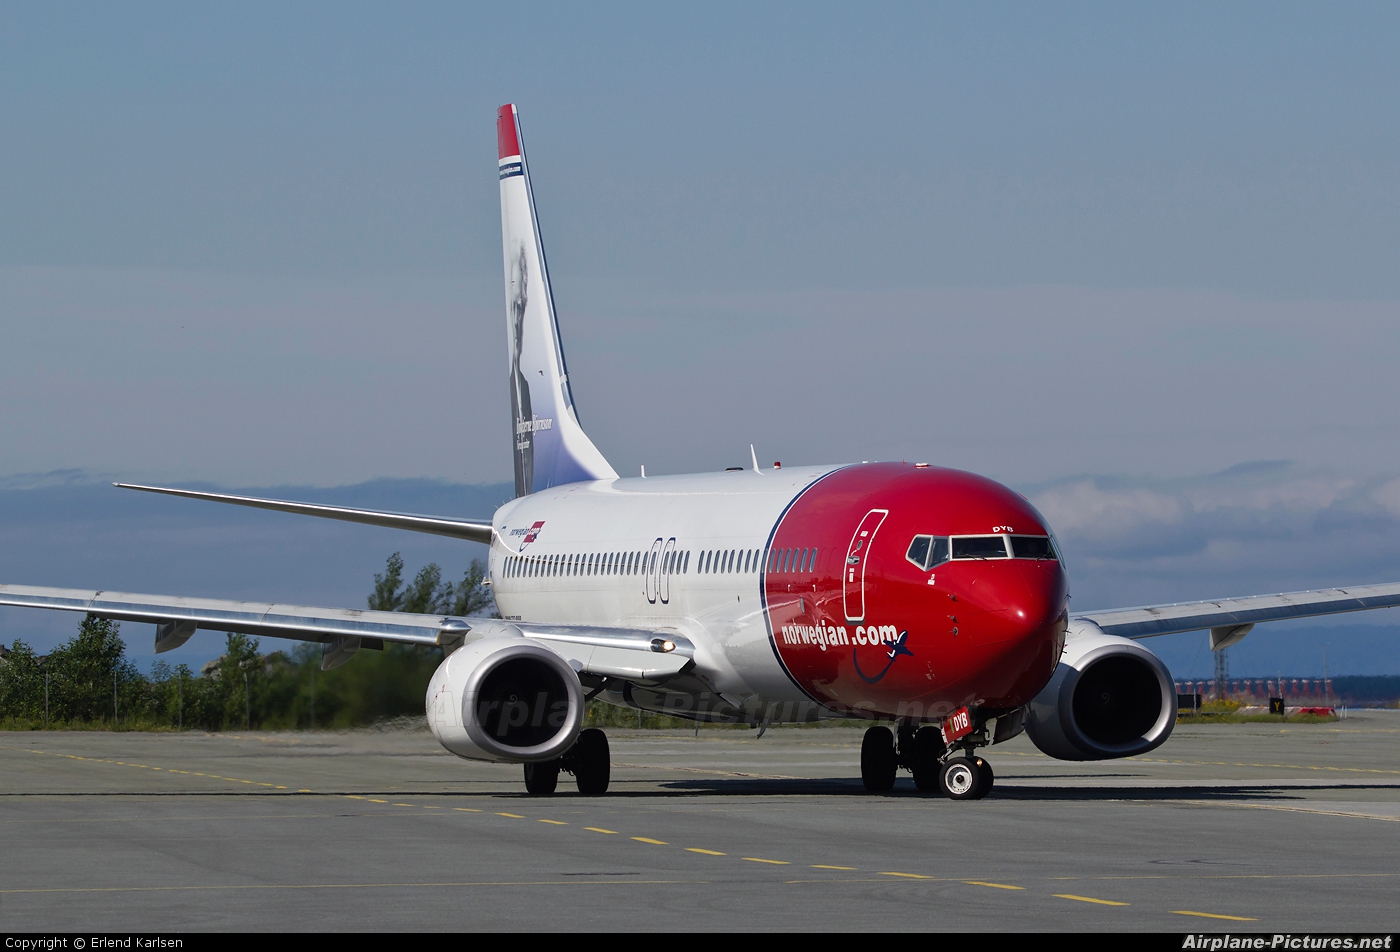 Norwegian Air Shuttle LN-DYB aircraft at Trondheim - Vaernes